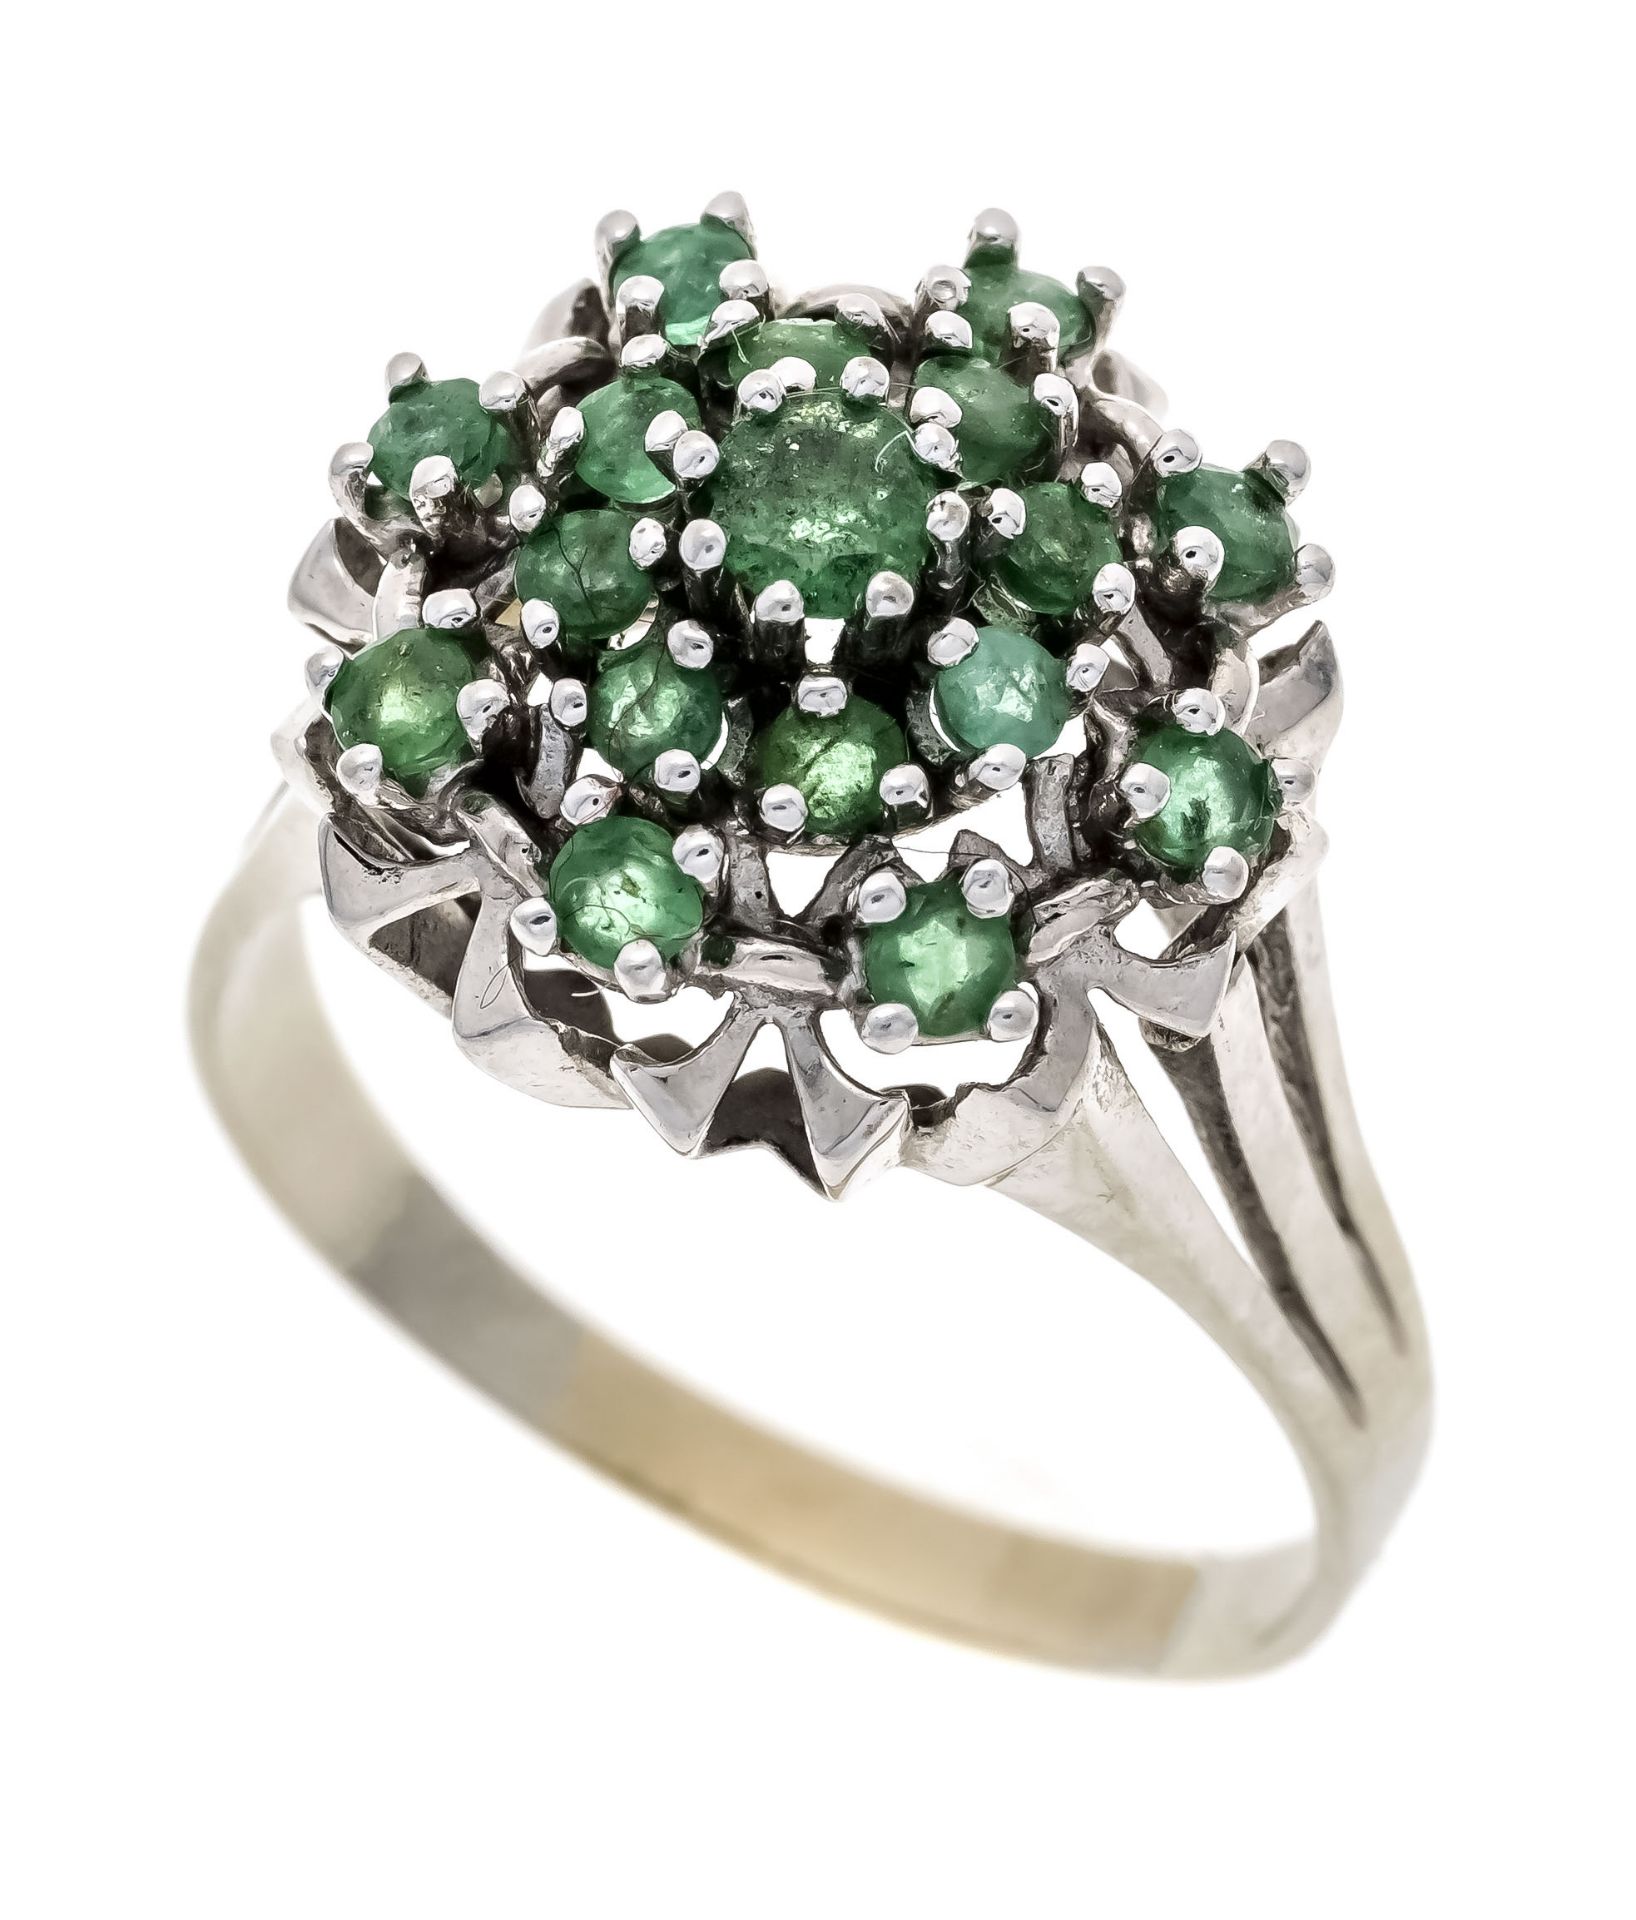 Smaragd-Ring WG 585/000 mit 17